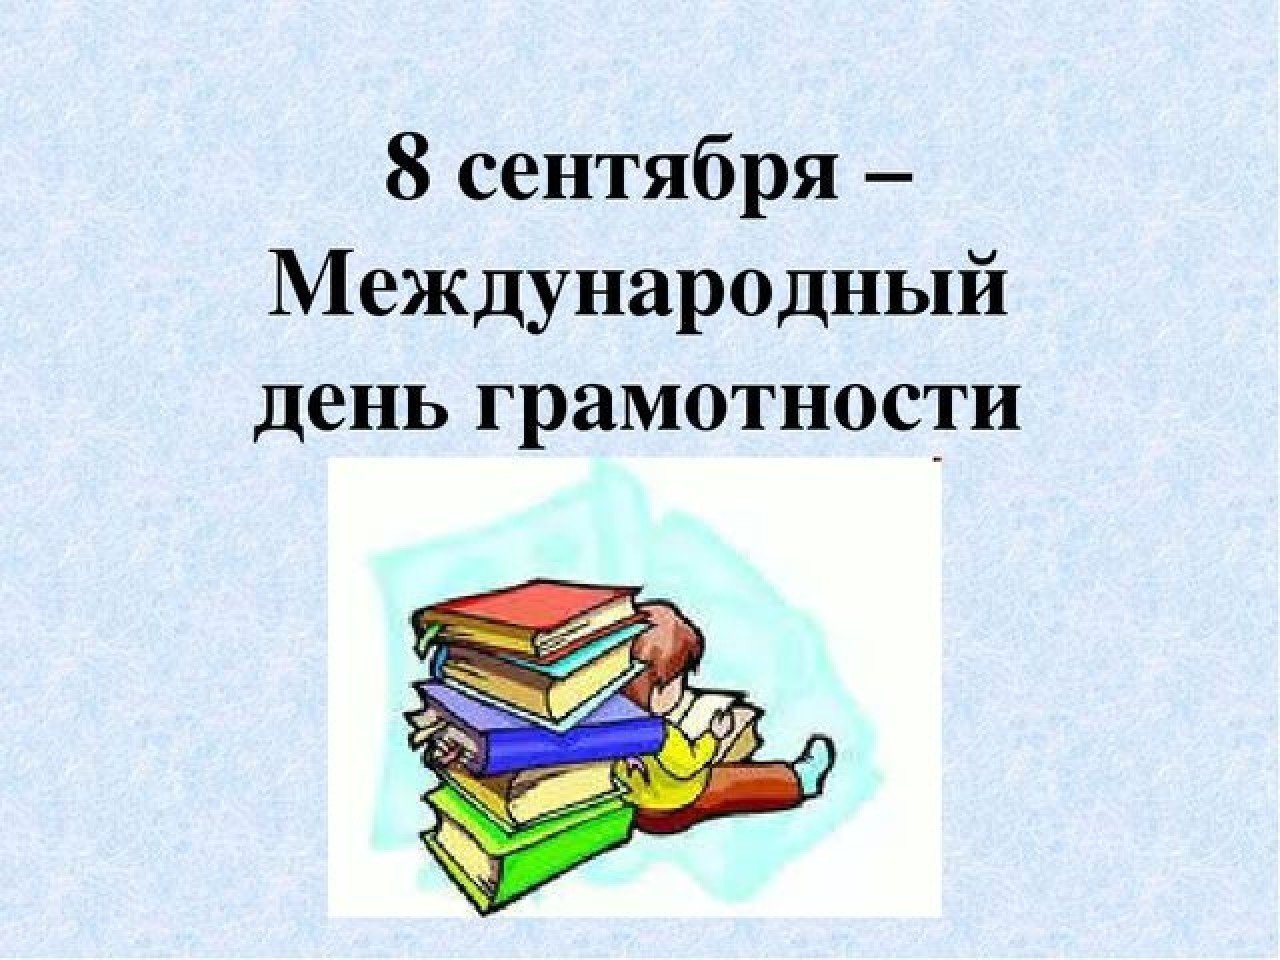 Всероссийский урок грамотности